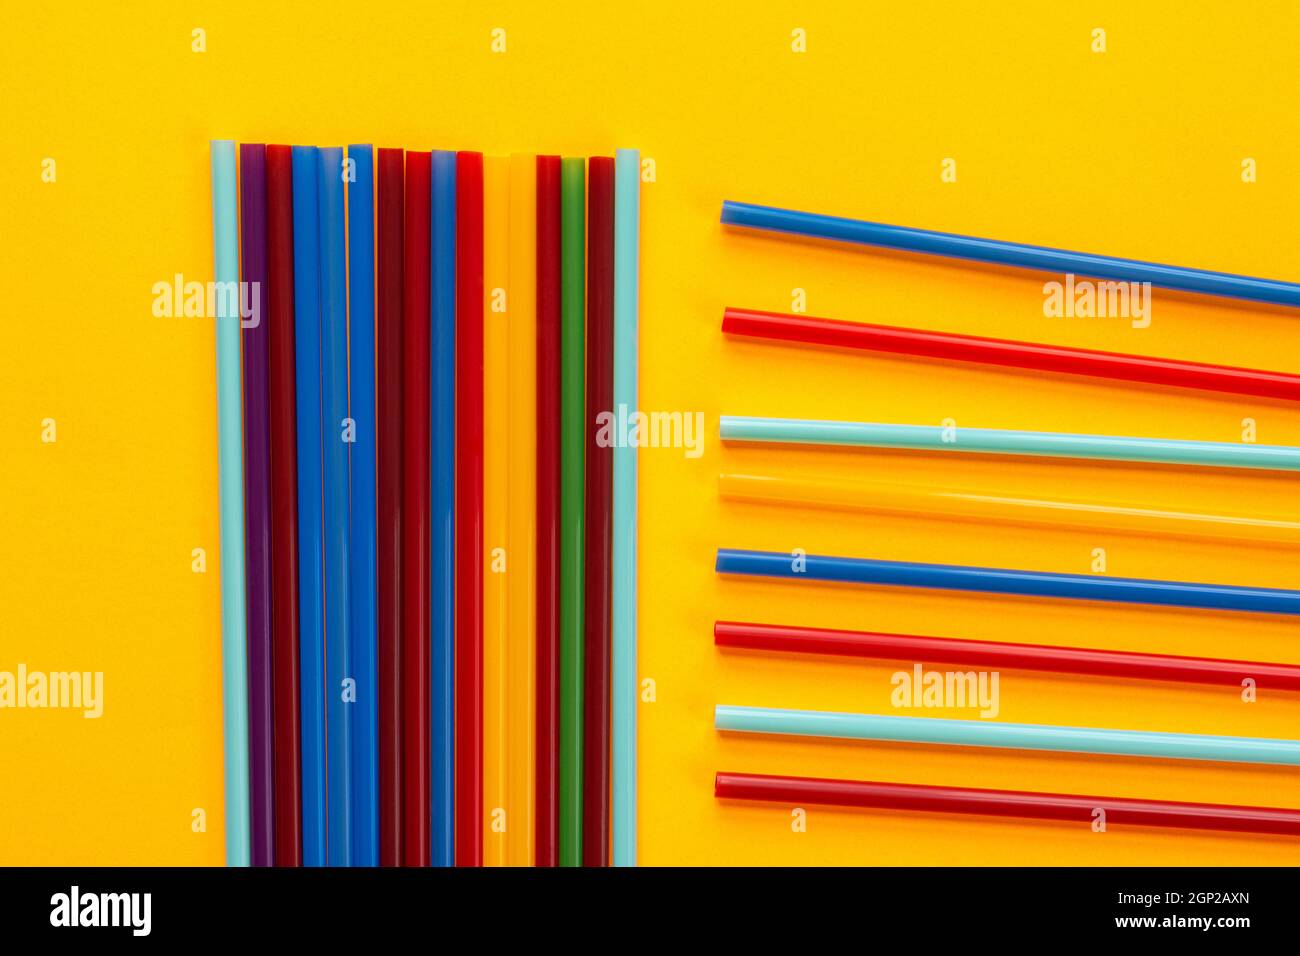 Sobre un fondo amarillo, los tubos de cóctel multicolores yacen, junto a un montón de tubos verticales yacen horizontales Foto de stock